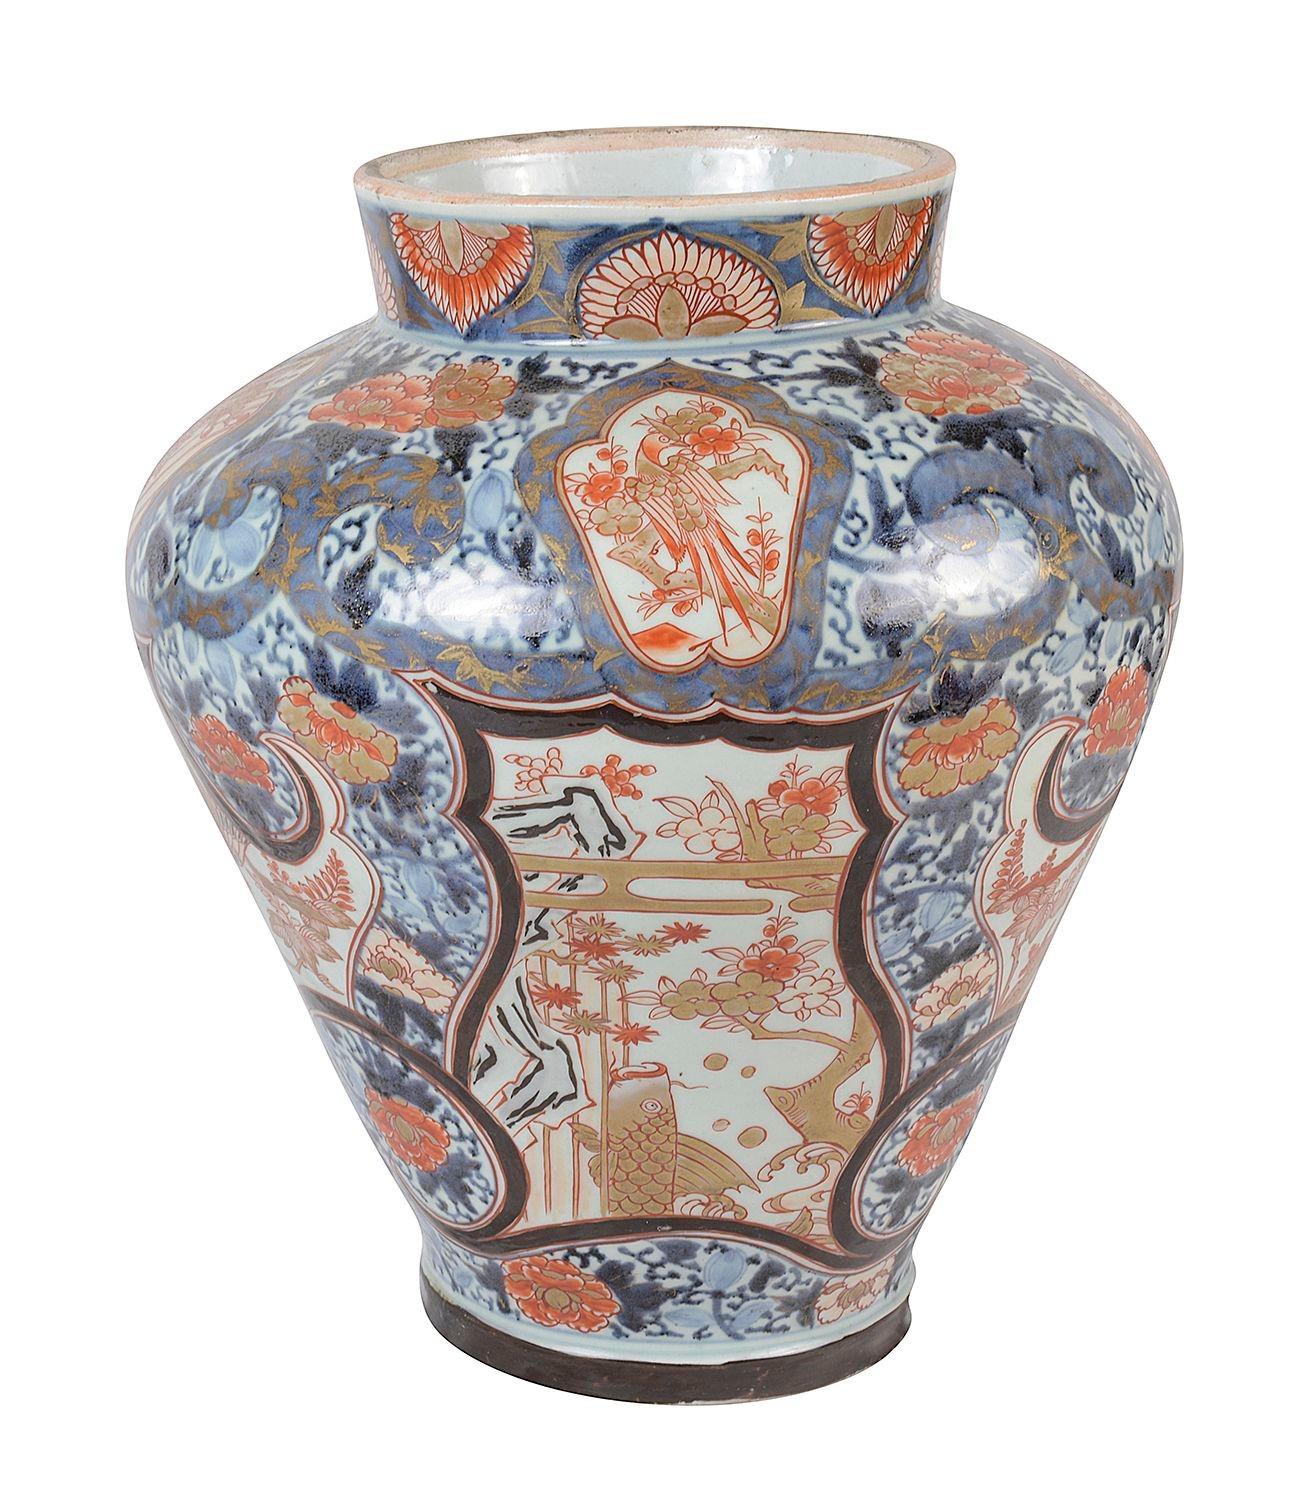 Eine beeindruckende und dekorative Arita Imari Vase/Lampe aus dem 18. Jahrhundert.
Sie hat eine wunderbare, kräftige Farbgebung, eine klassische Blatt- und Motivverzierung mit handgemalten Einsätzen, die einen exotischen Vogel darstellen.
Bei Bedarf